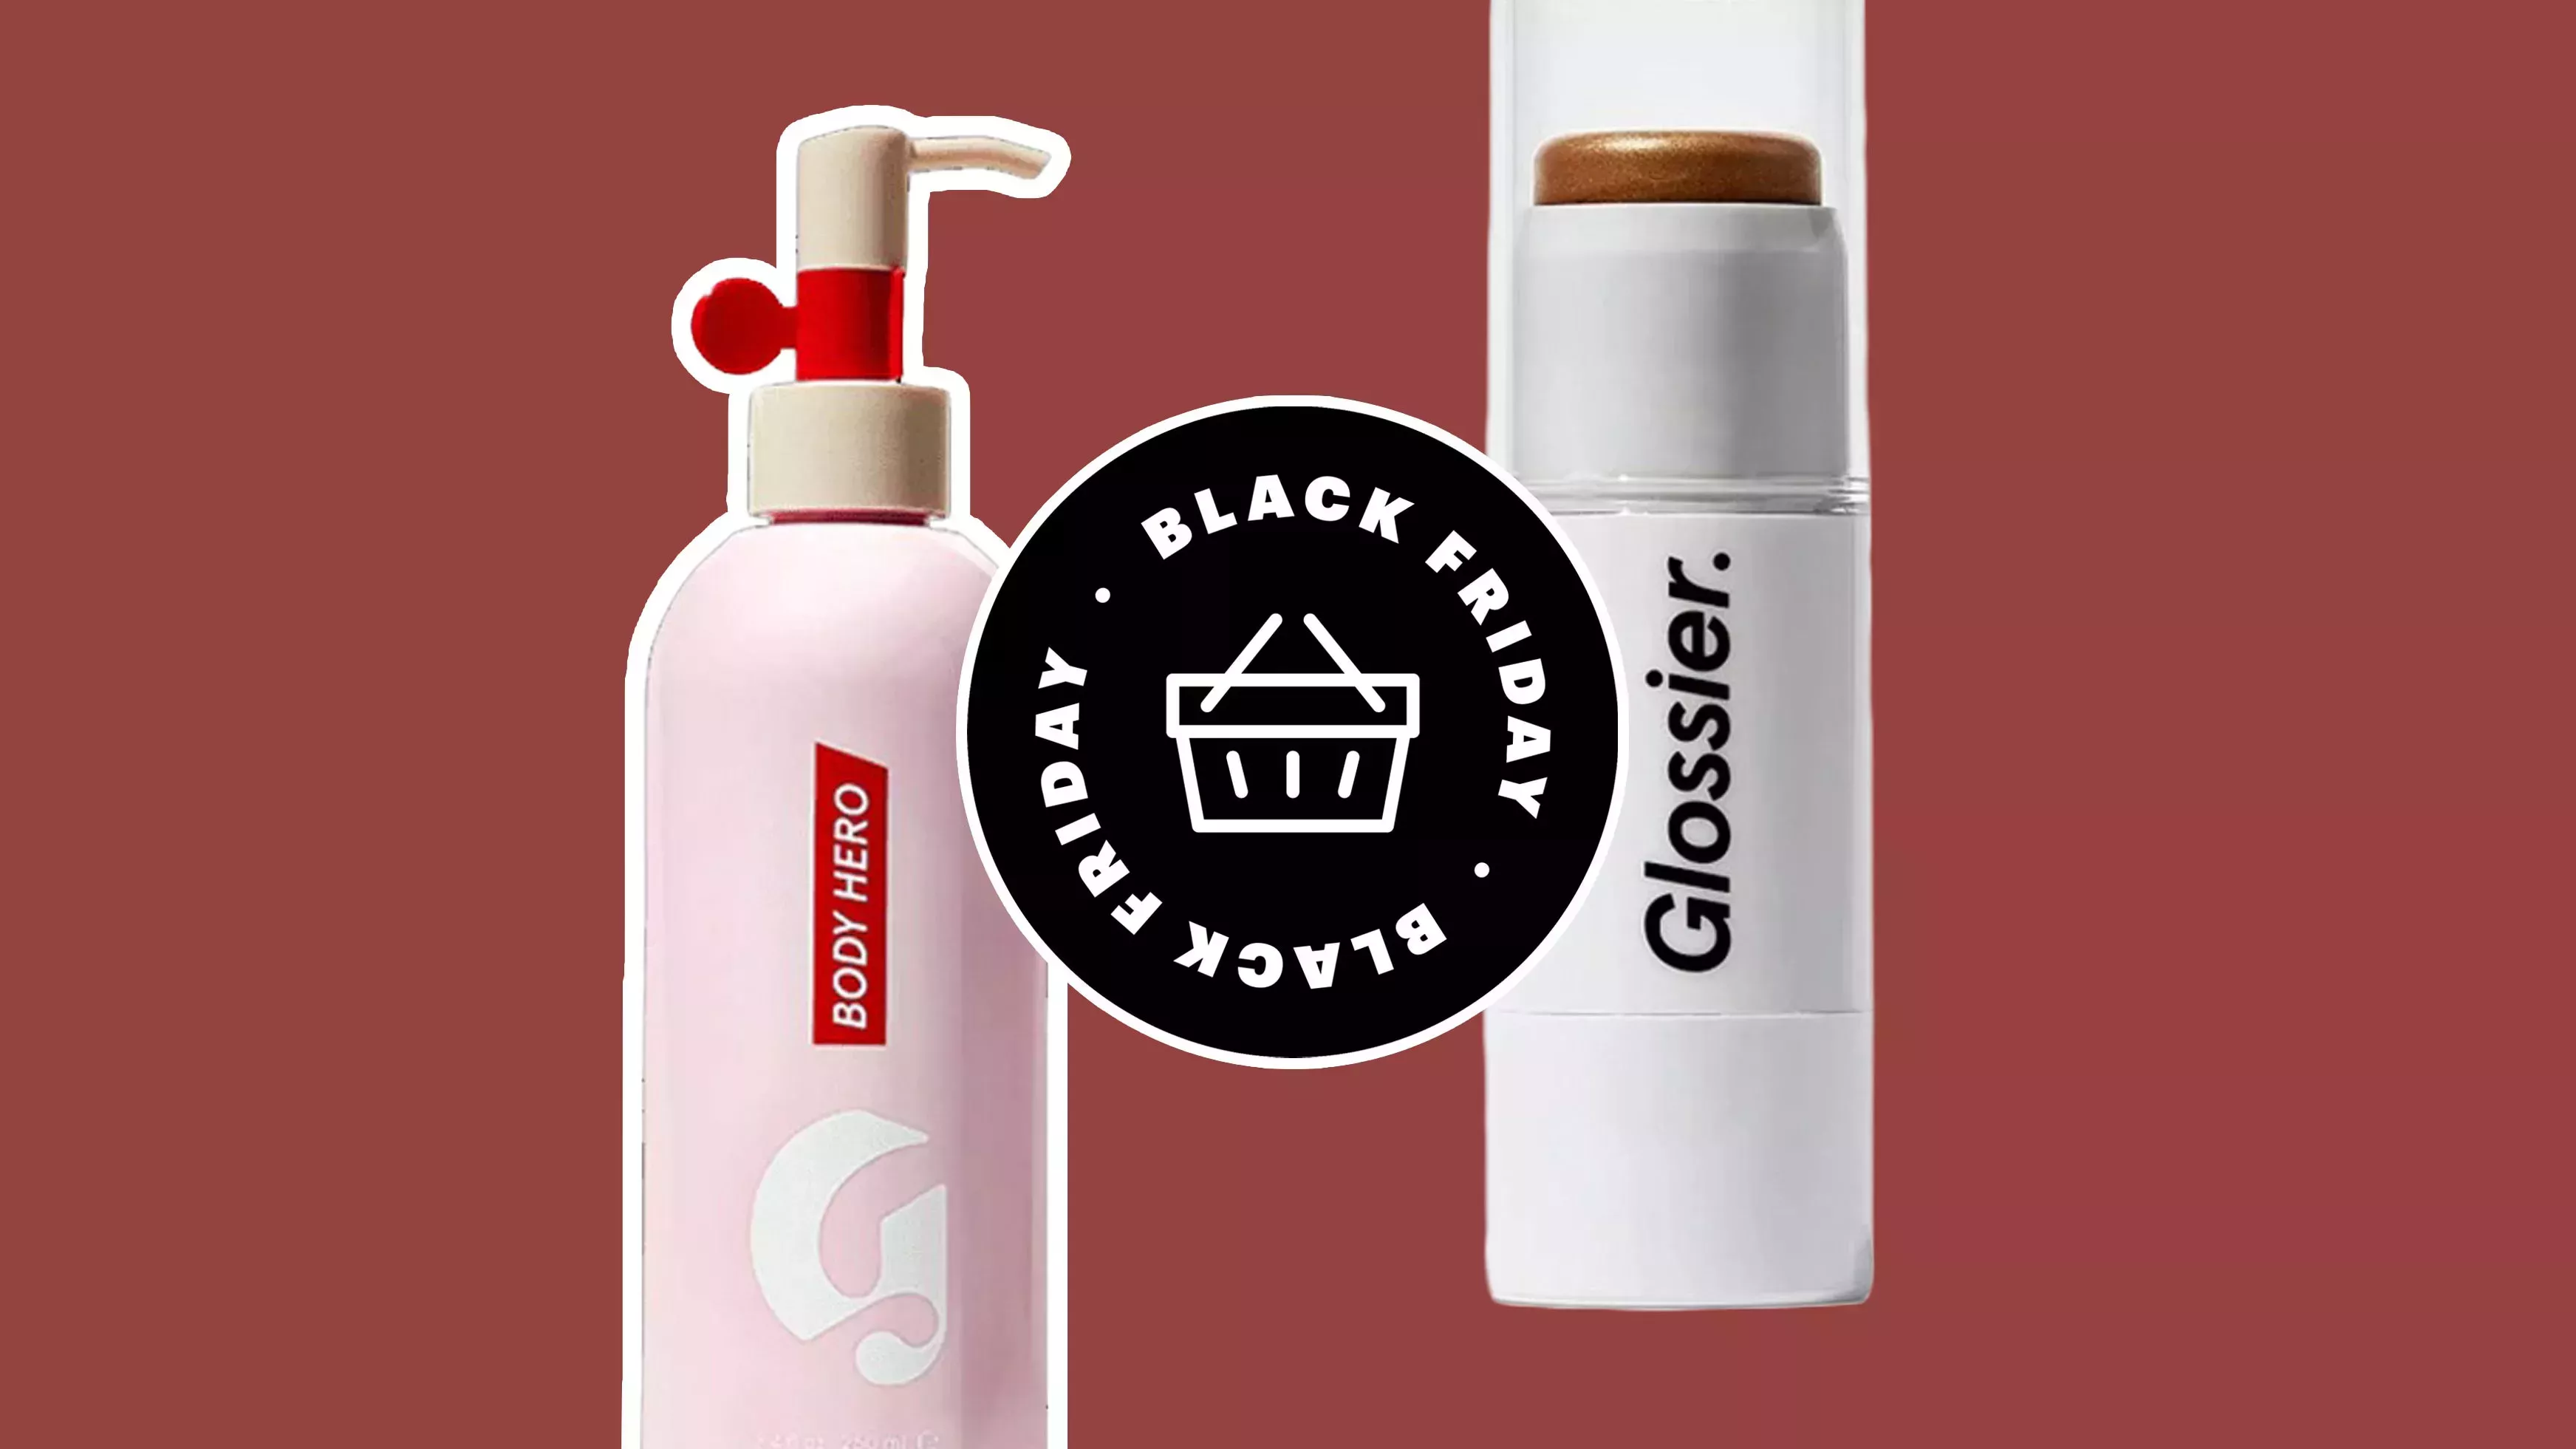 Ahorra un 20% de descuento en todos los productos Glossier este Black Friday